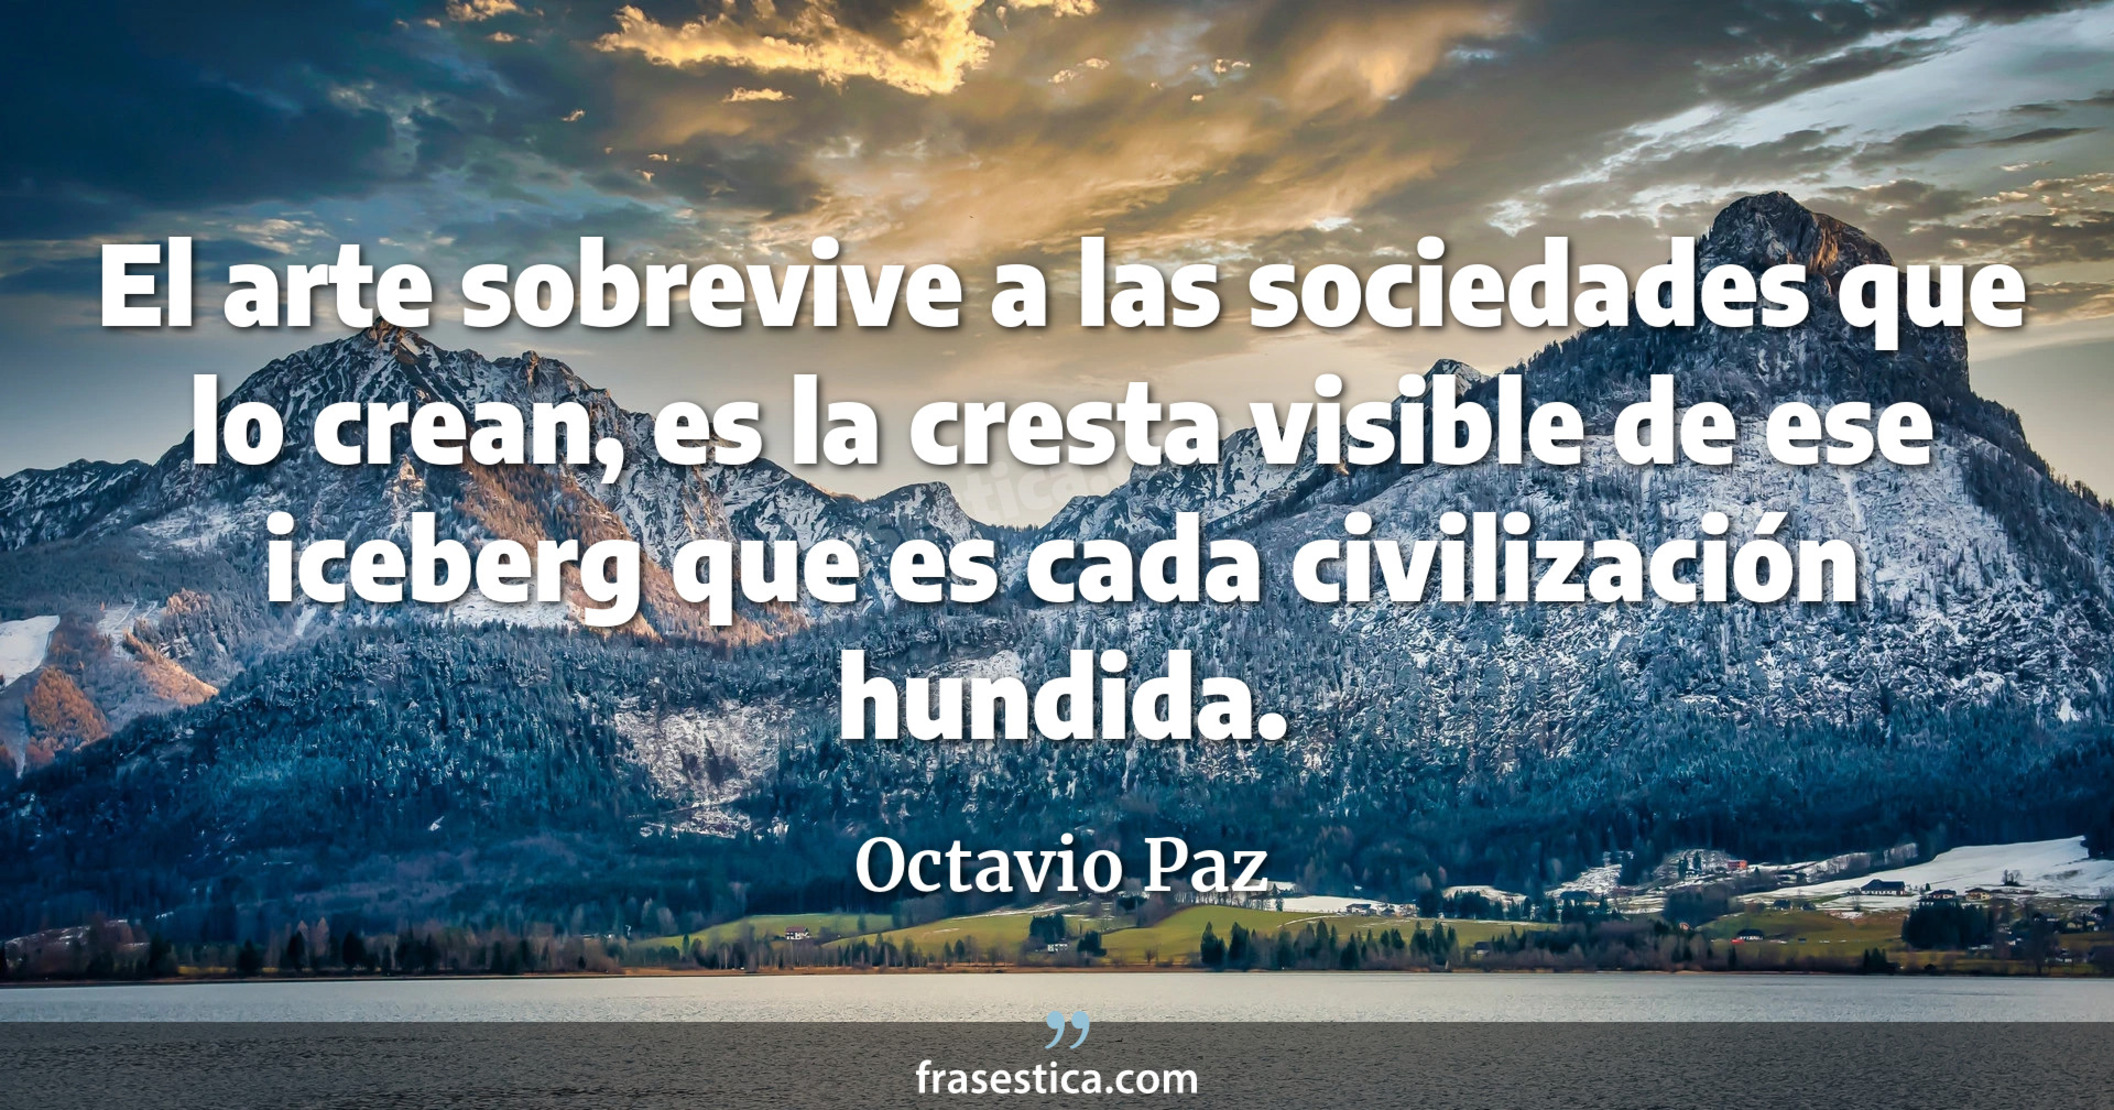 El arte sobrevive a las sociedades que lo crean, es la cresta visible de ese iceberg que es cada civilización hundida. - Octavio Paz